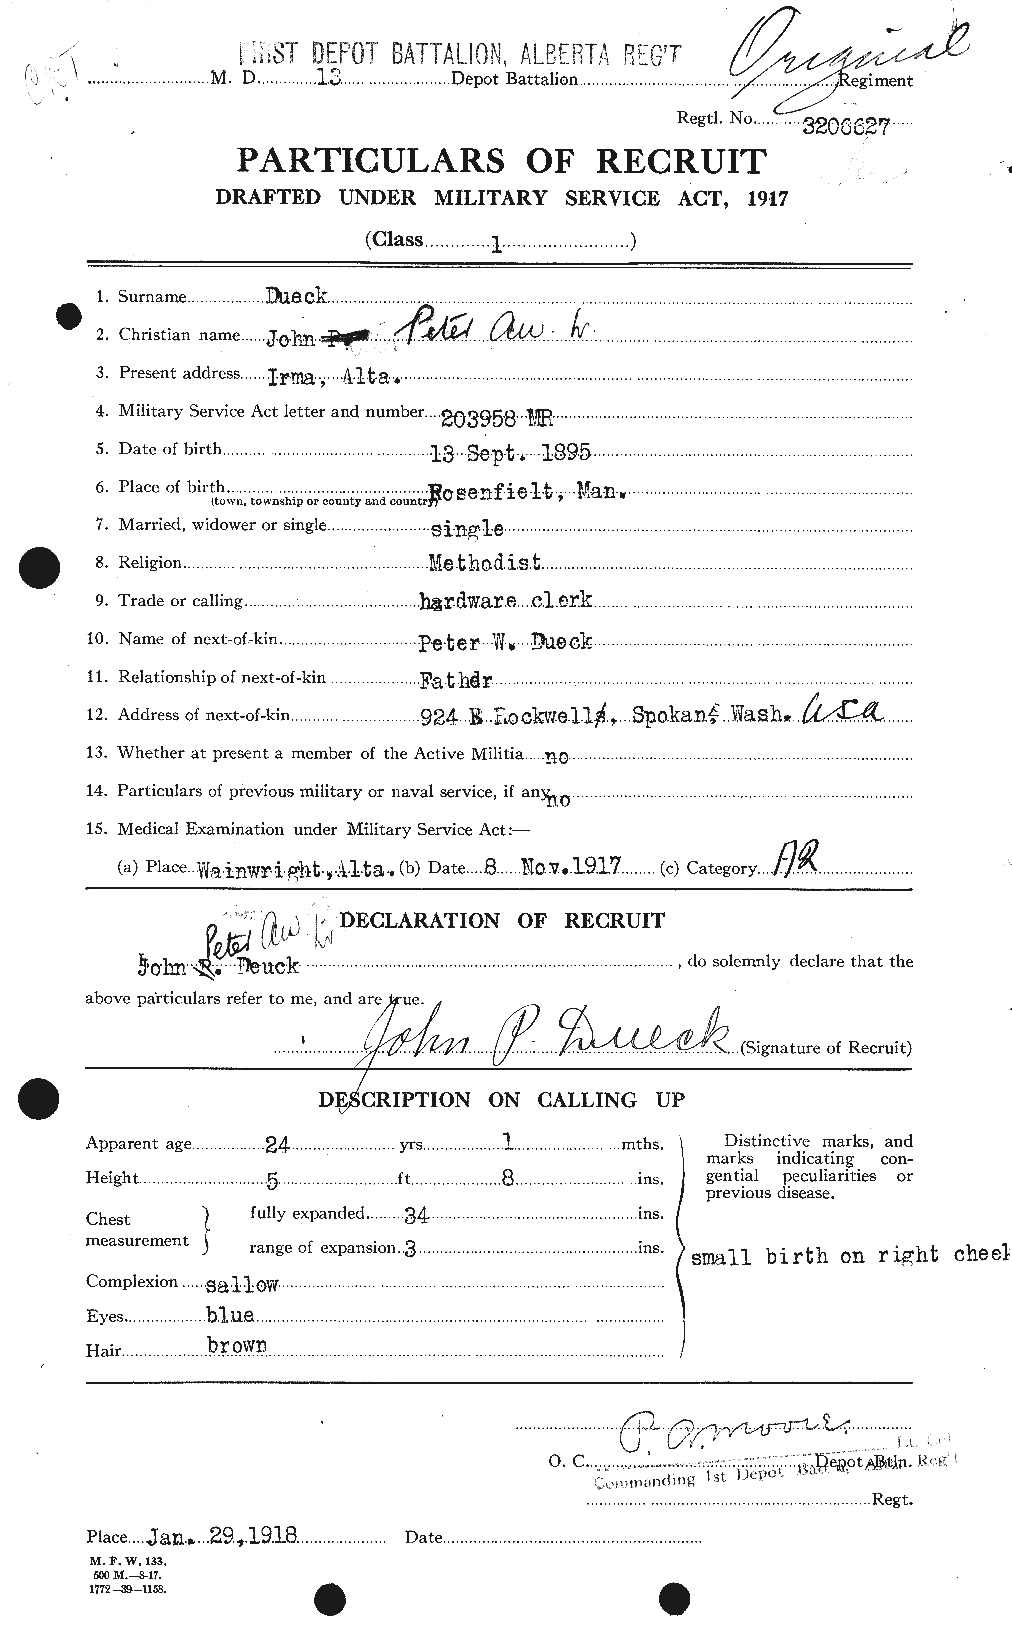 Dossiers du Personnel de la Première Guerre mondiale - CEC 306086a